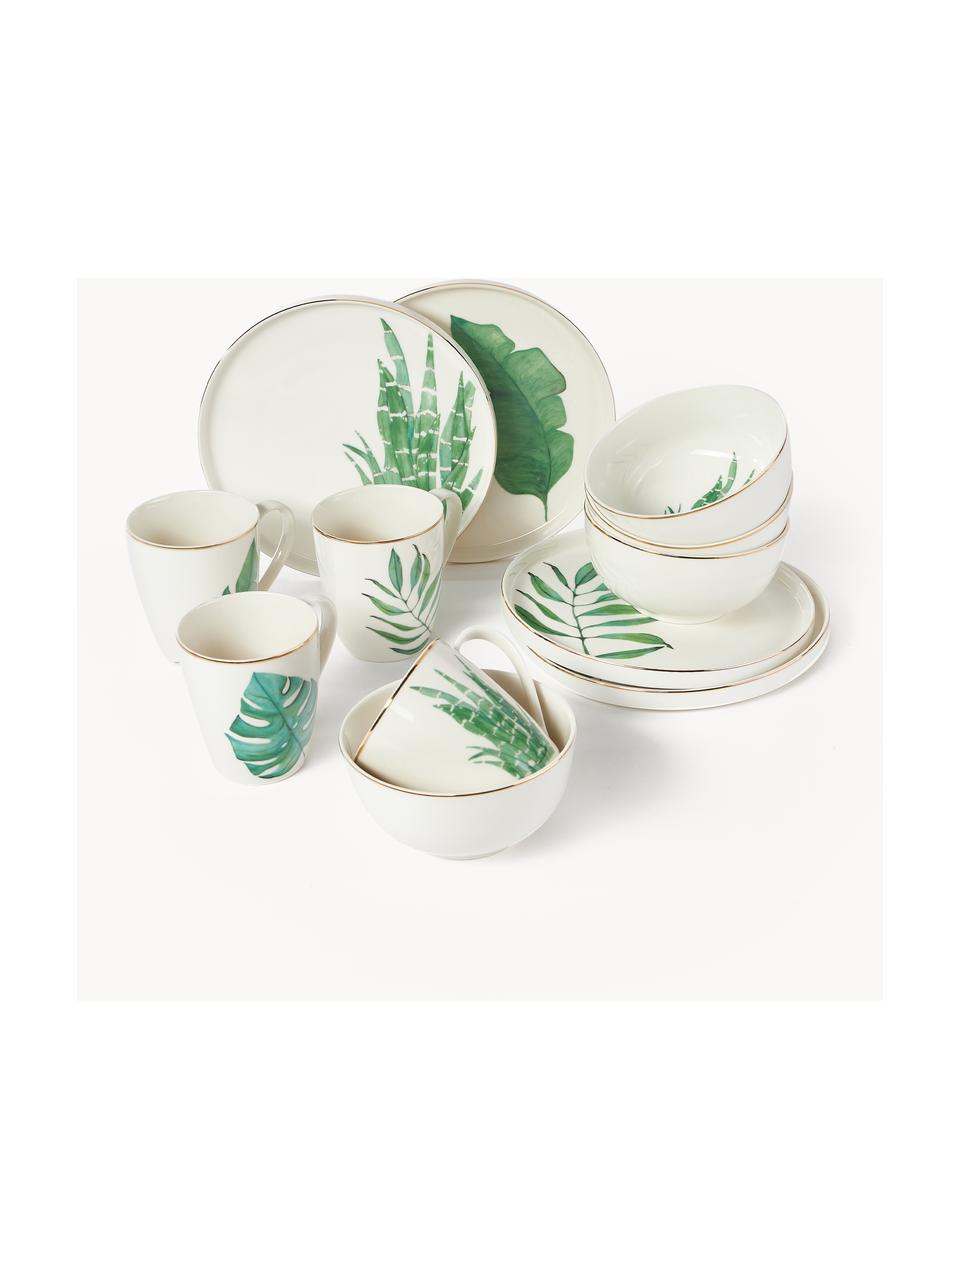 Súprava riadu s tropickým dizajnom Timba, 4 osoby (12 dielov), Fine Bone China (porcelán)
Mäkký porcelán, ktorý sa vyznačuje predovšetkým žiarivým, priehľadným leskom, Biela, zelená, Súprava s rôznymi veľkosťami